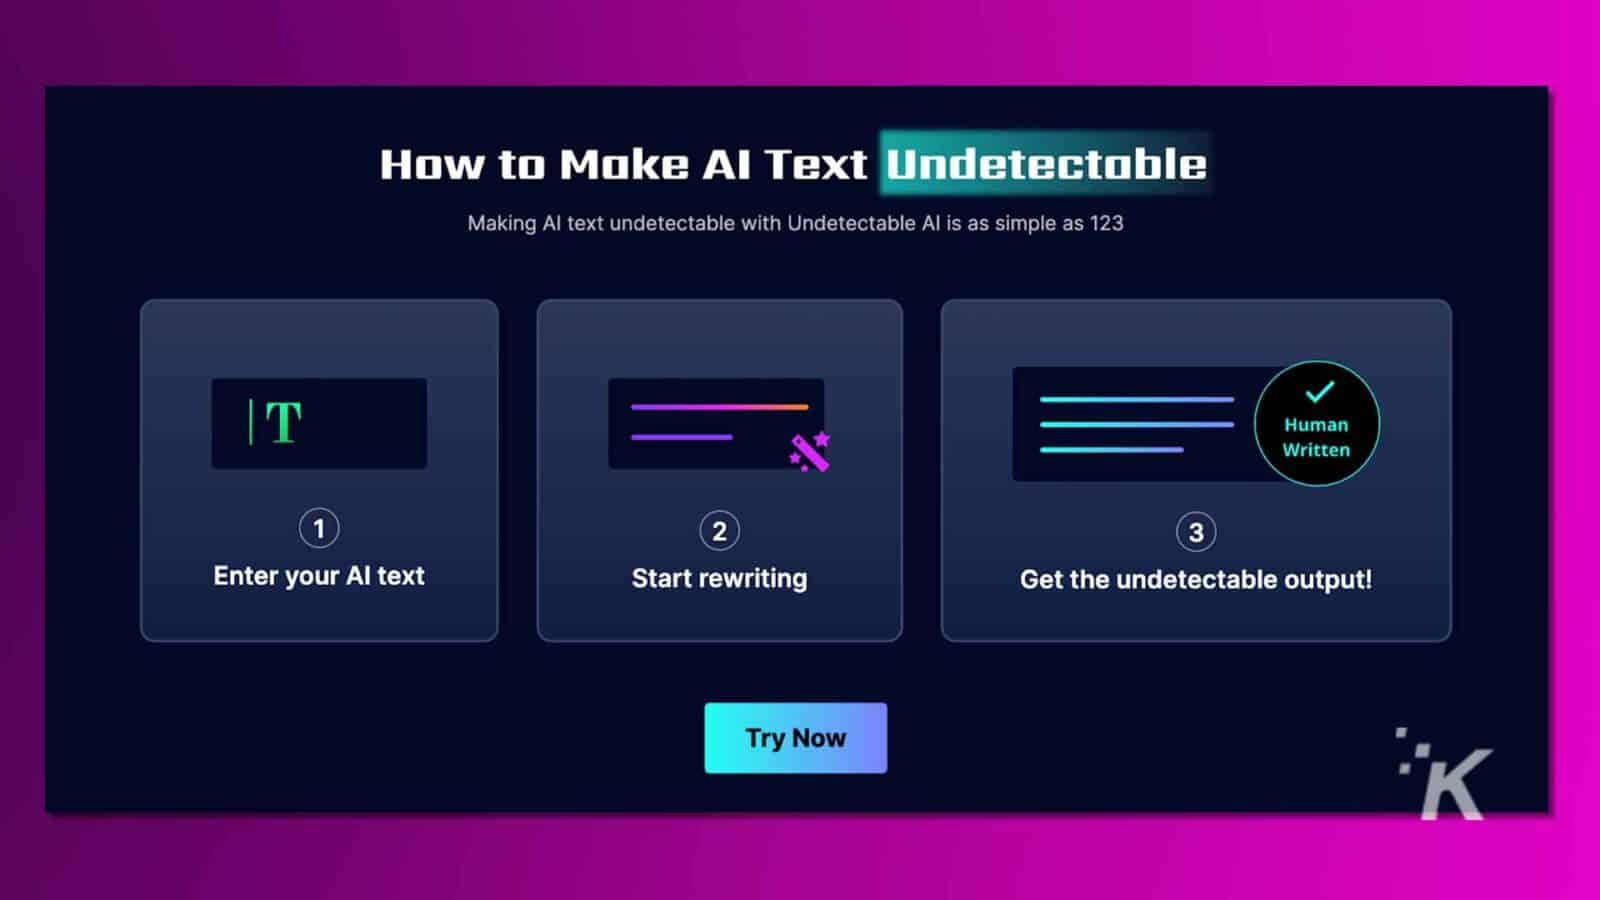 생생한 분홍색과 보라색 색상의 3단계로 구성된 "AI 텍스트를 감지할 수 없게 만드는 방법"이라는 제목의 인포그래픽과 "지금 사용해 보기" 버튼으로 소프트웨어 도구를 홍보합니다. 감지할 수 없는 AI